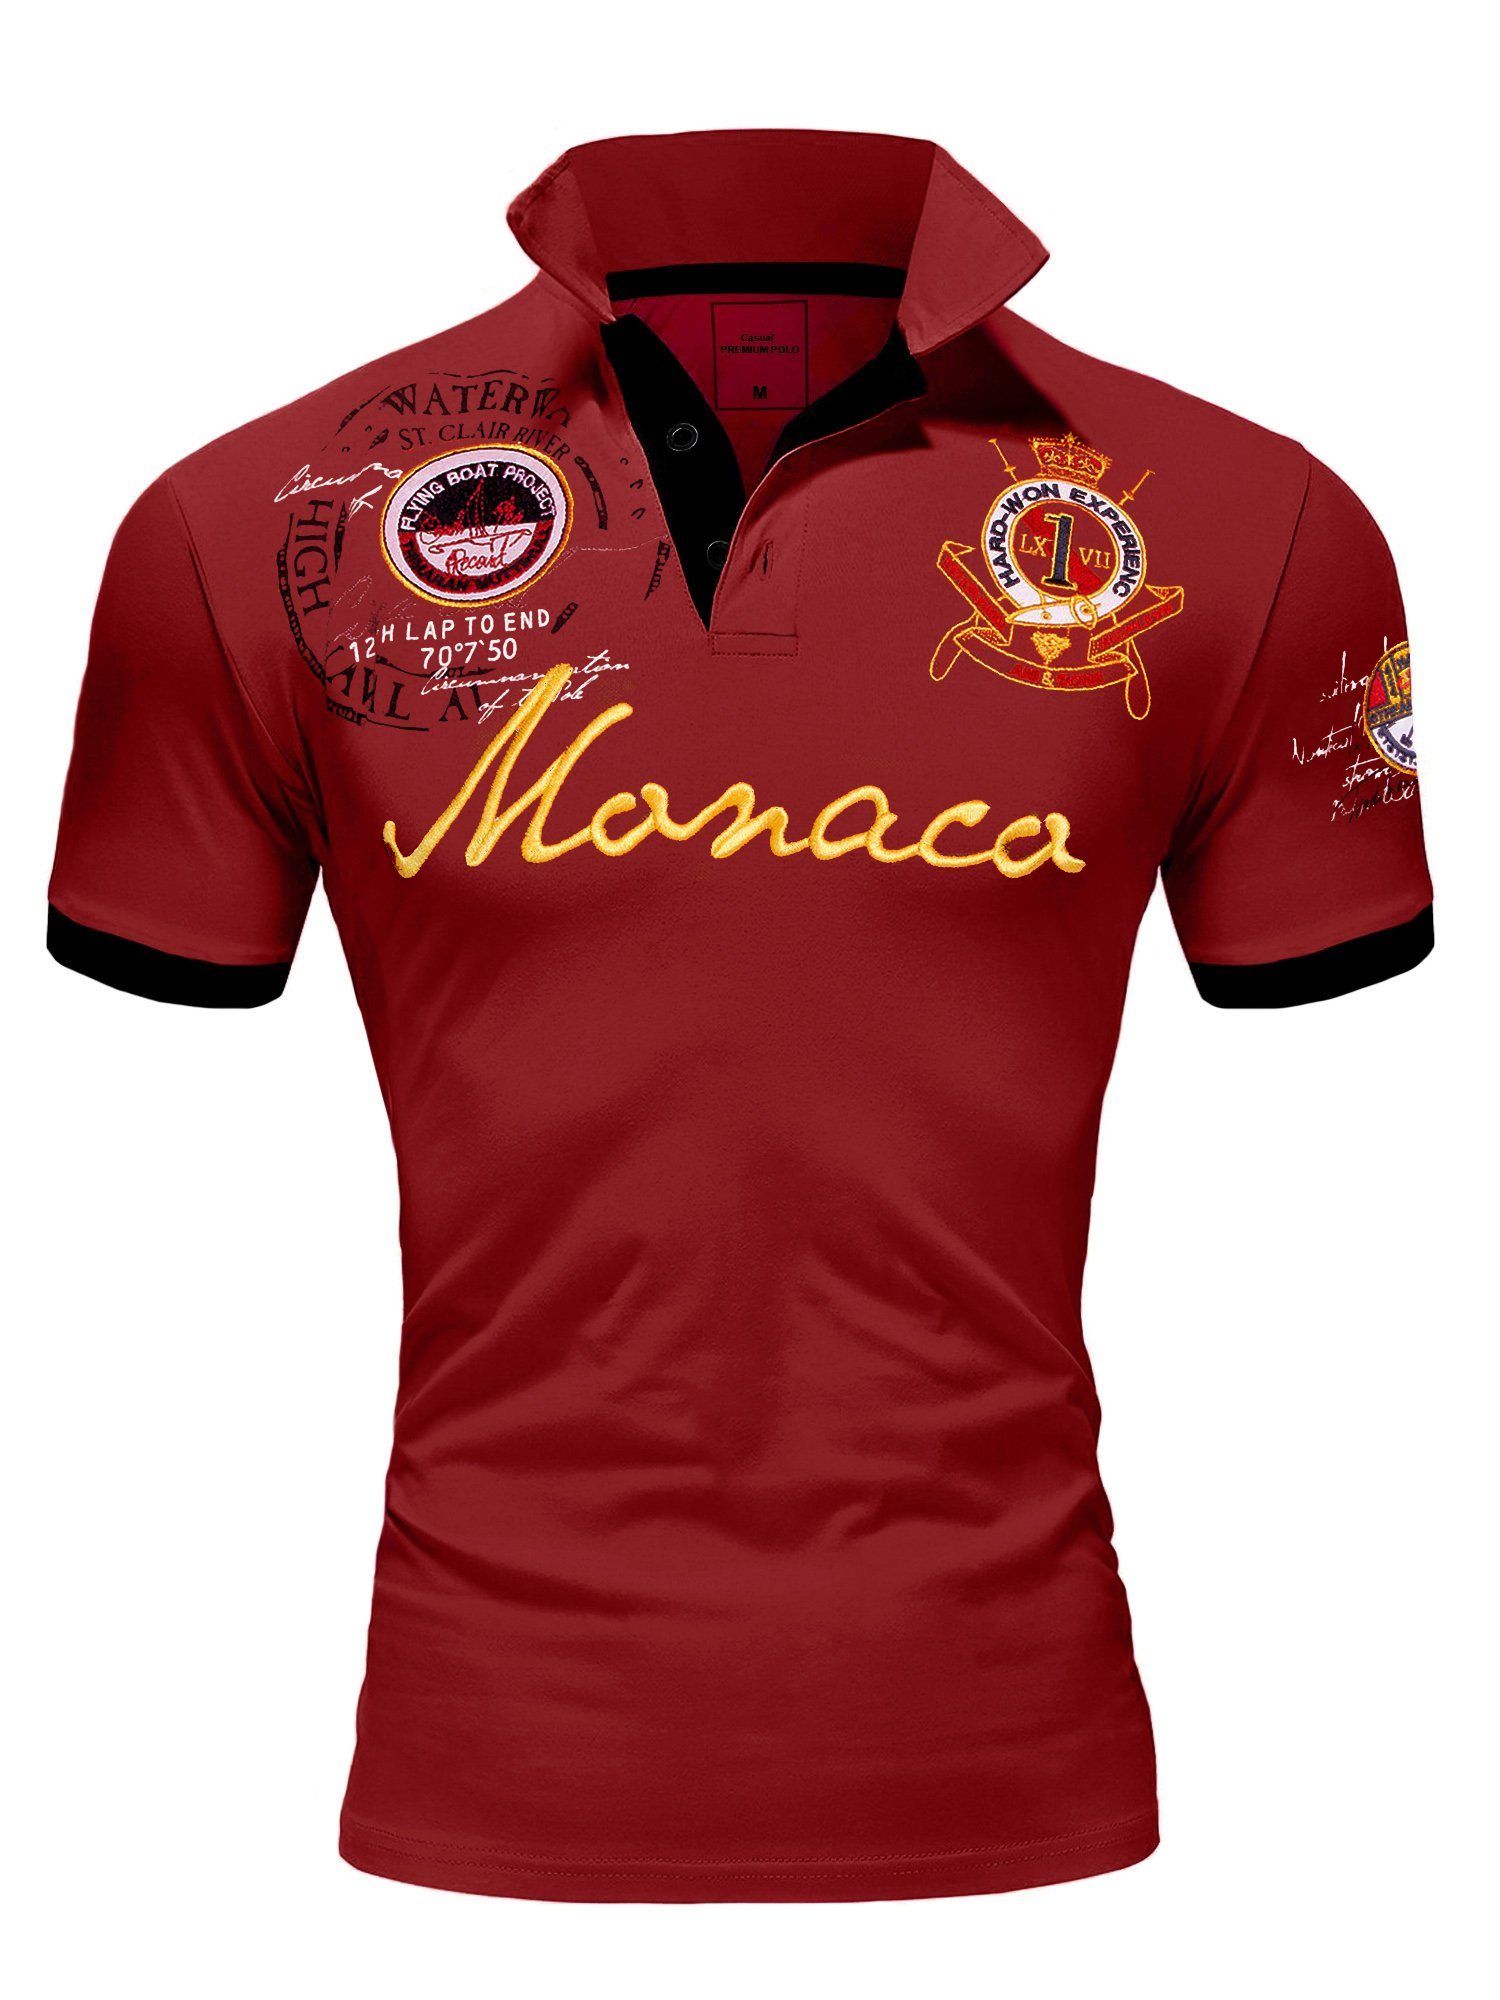 Amaci&Sons Poloshirt Monaco 2.0 Poloshirt mit Stickerei Herren Basic Kontrast Monaco Stickerei Kurzarm Polohemd T-Shirt Bordeaux